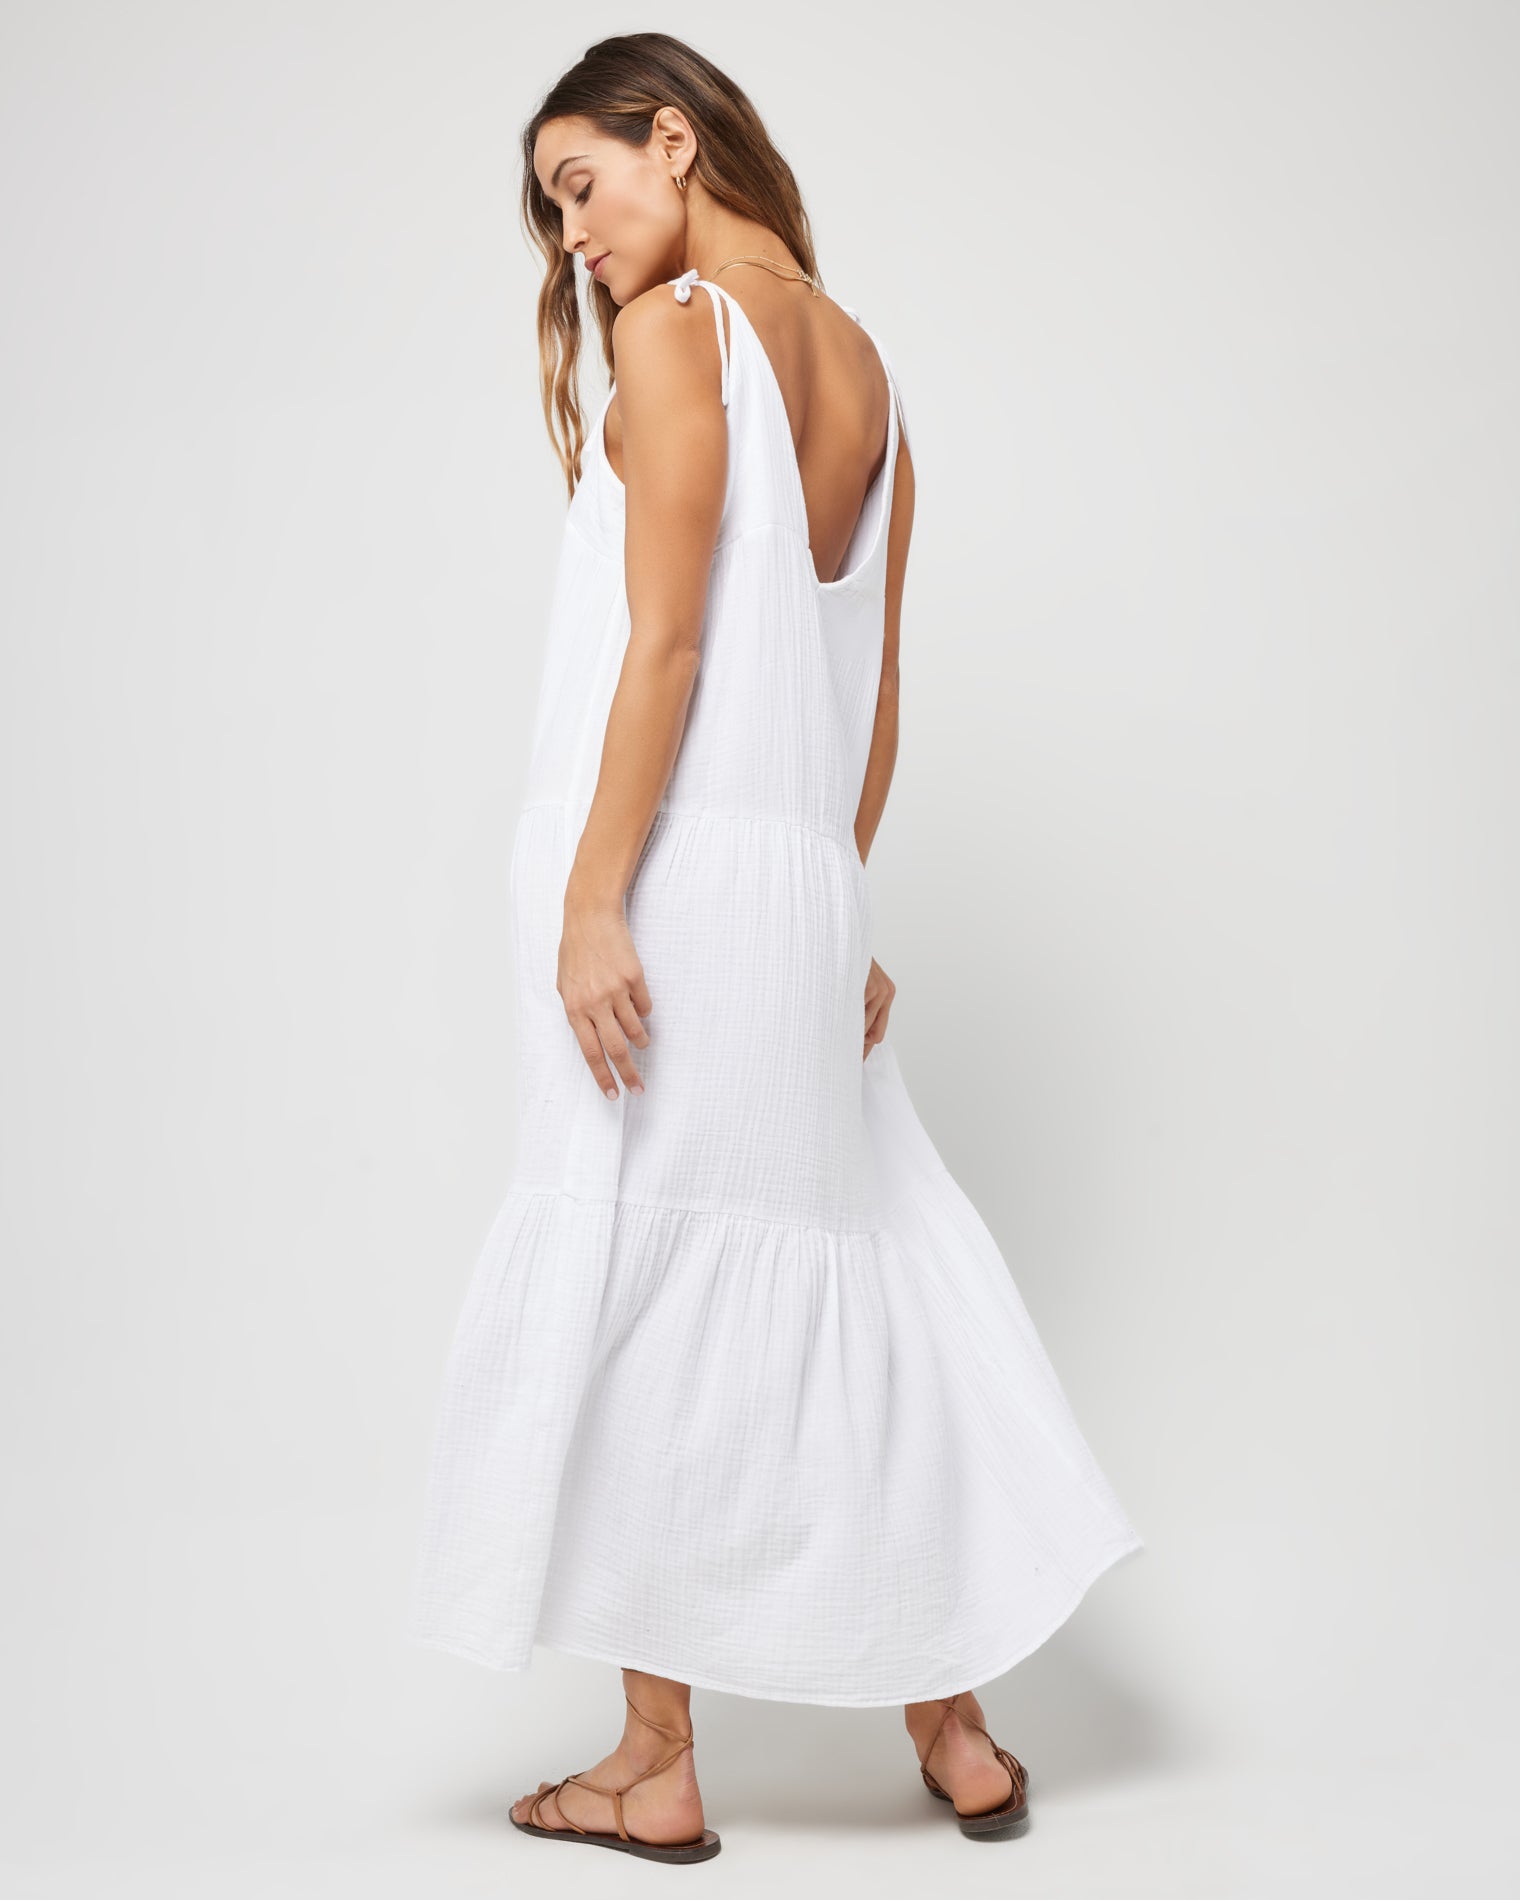 Ava Dress White | Model: Anna (size: S)